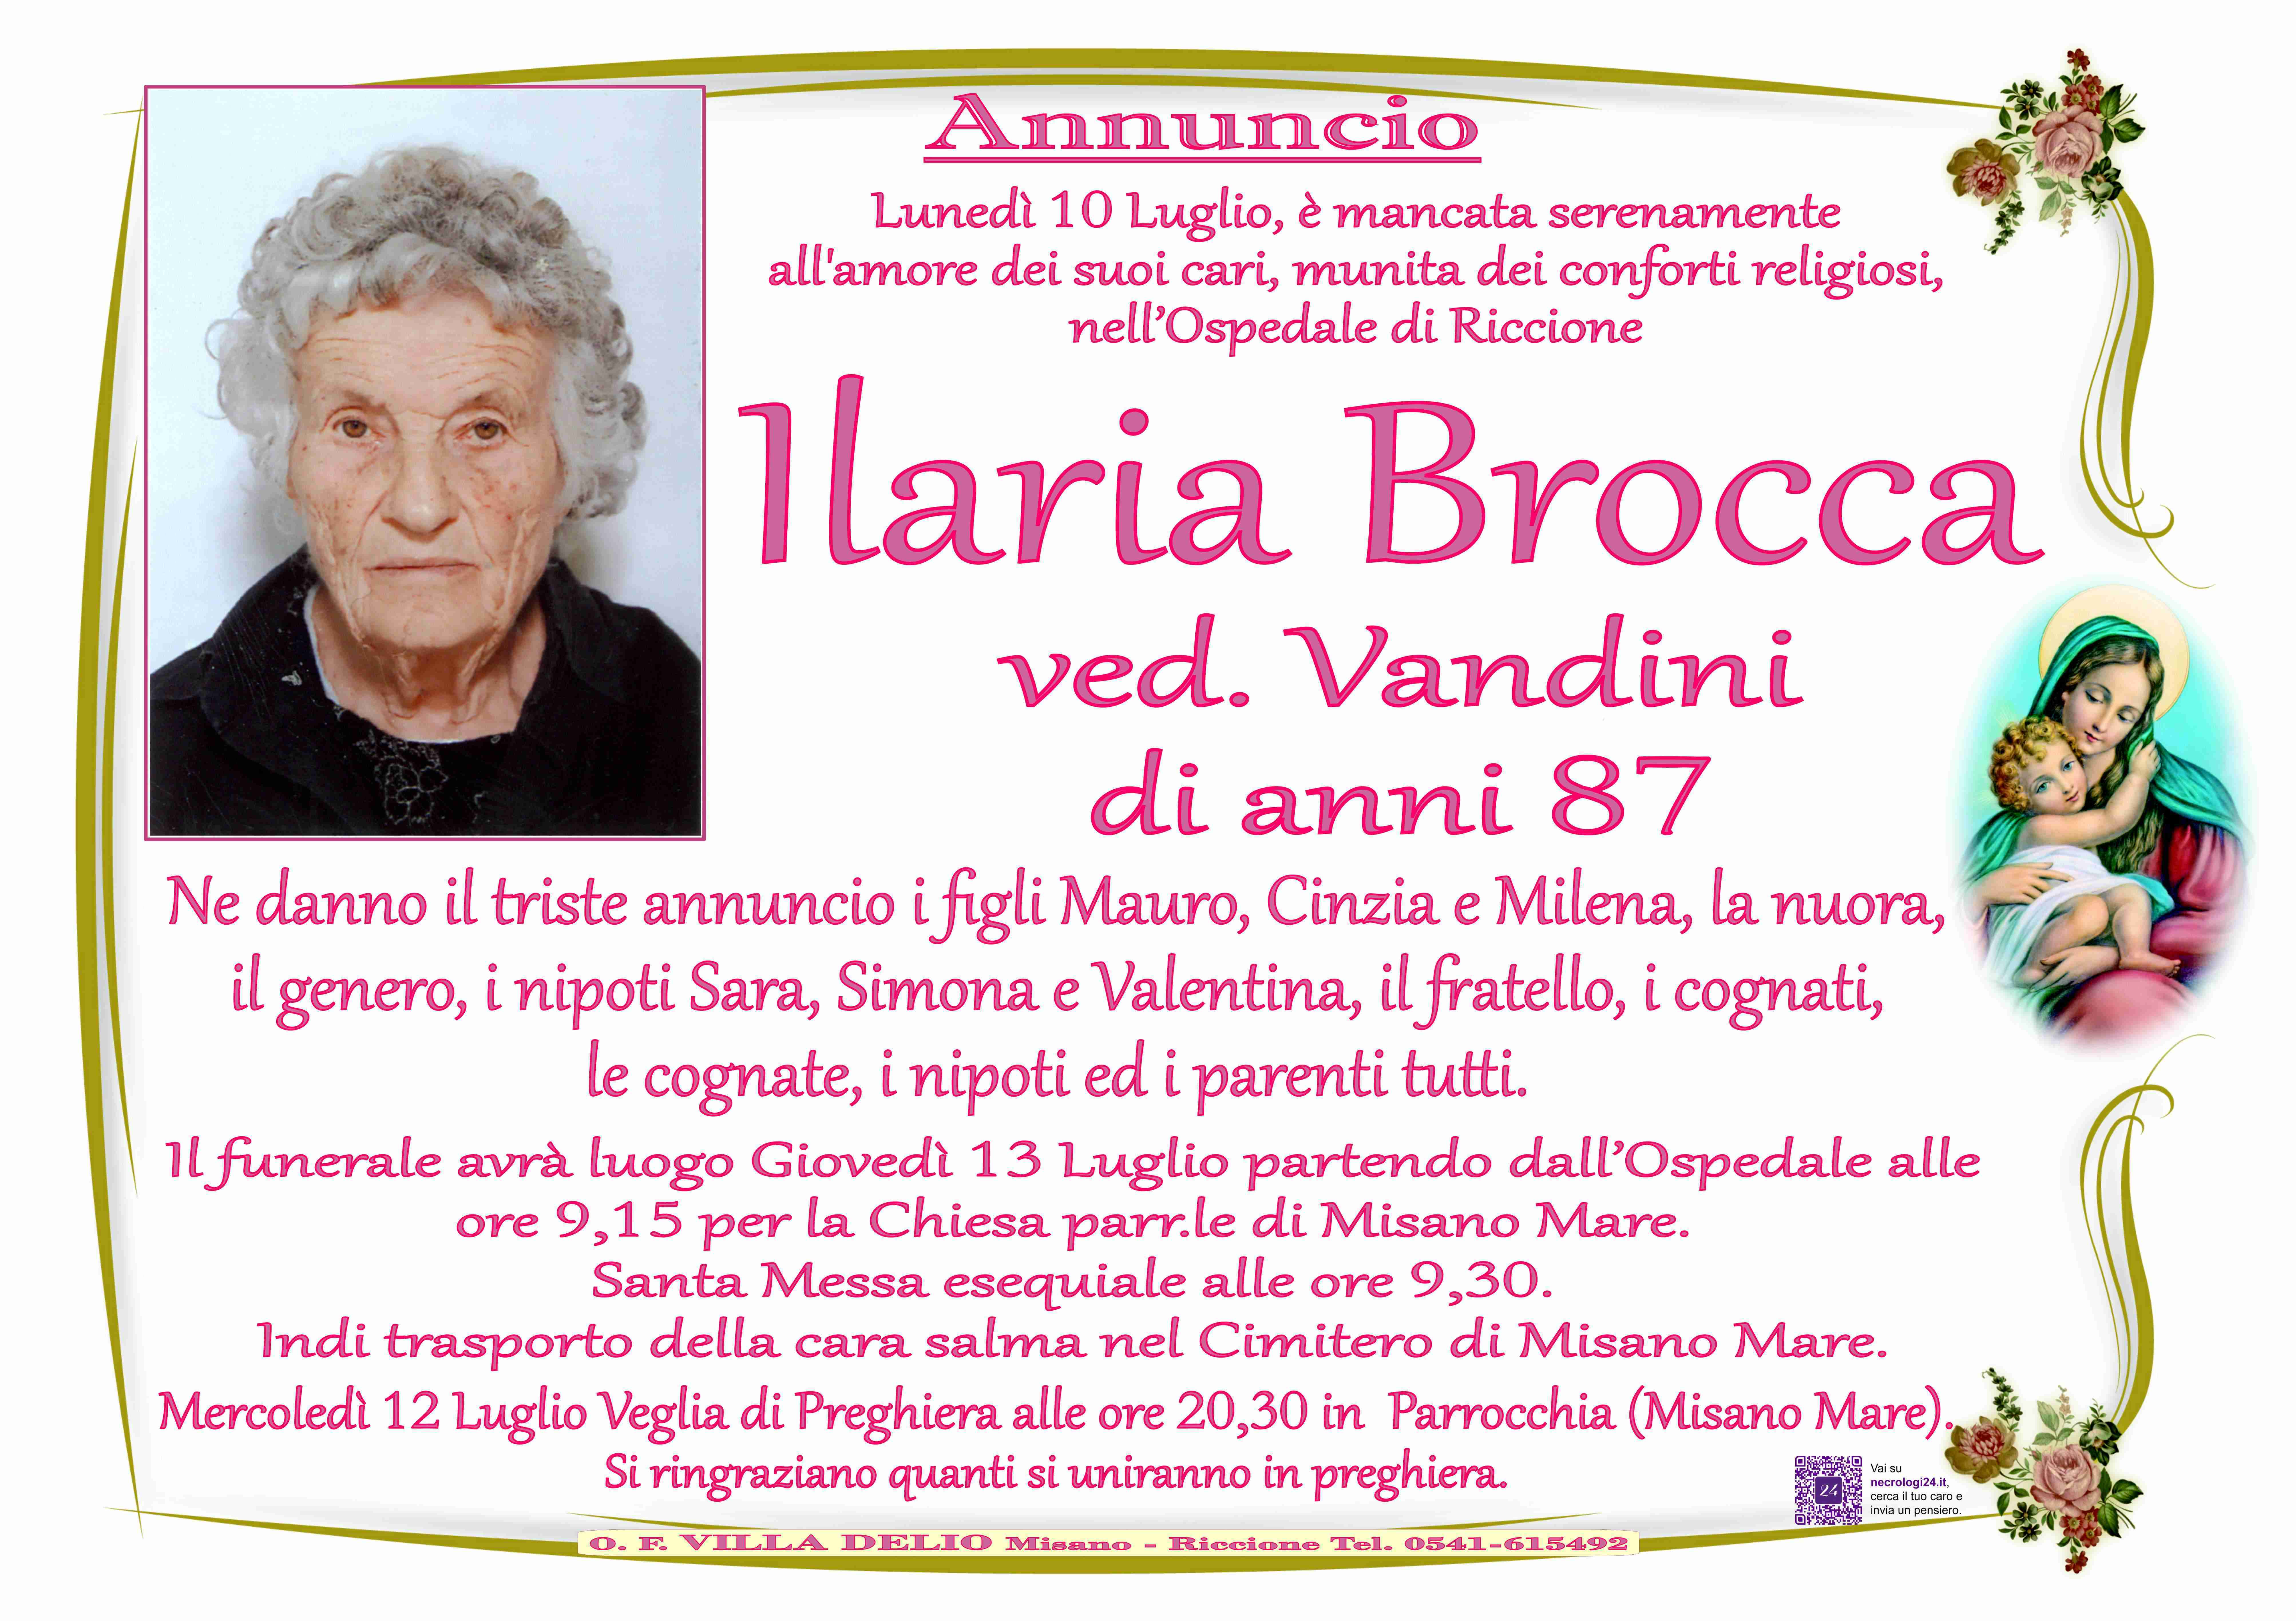 Ilaria Brocca